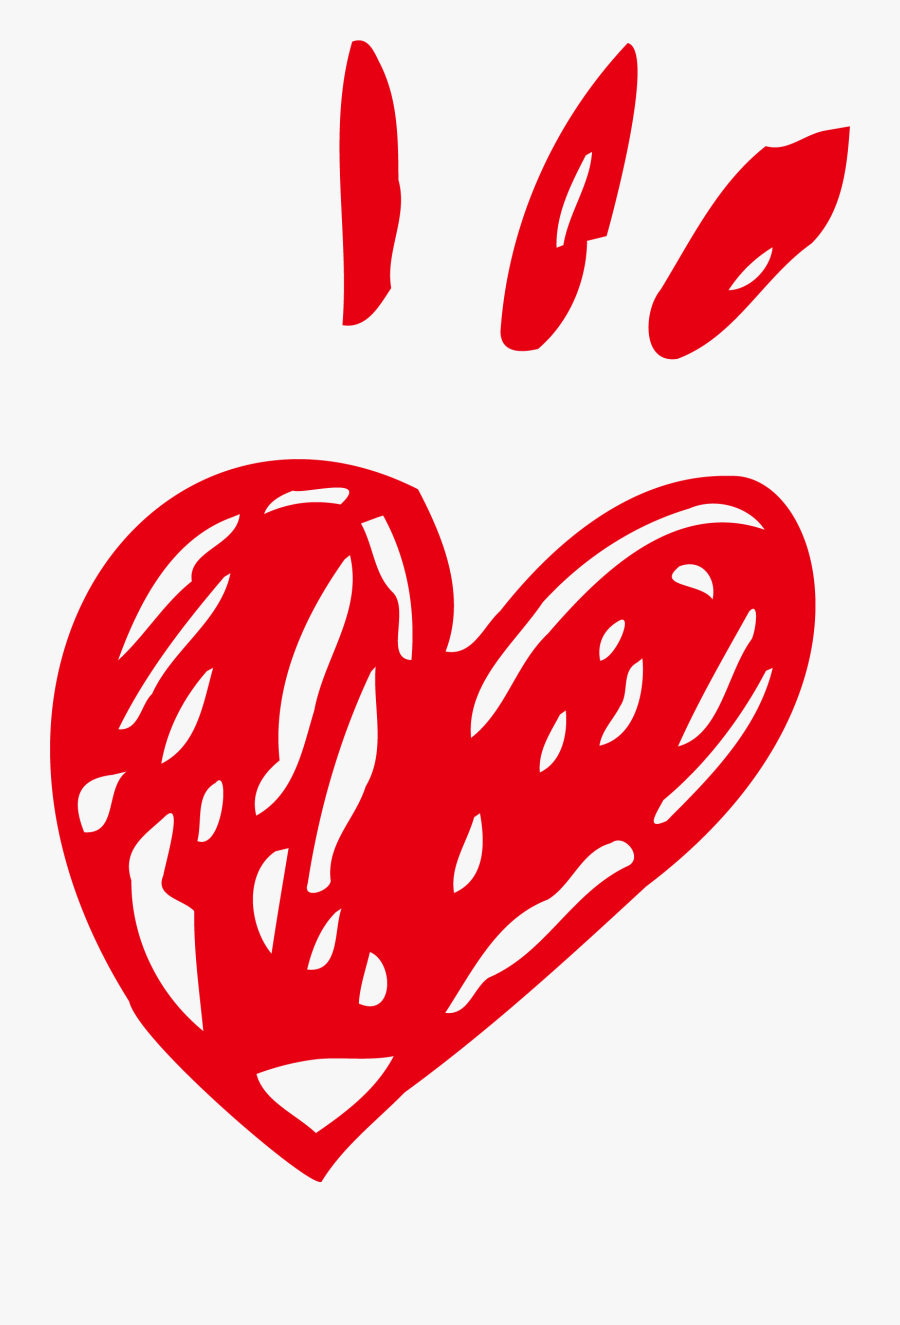 Sidewalk Chalk Cartoon Heart - Heart Crayon Png, Transparent Clipart